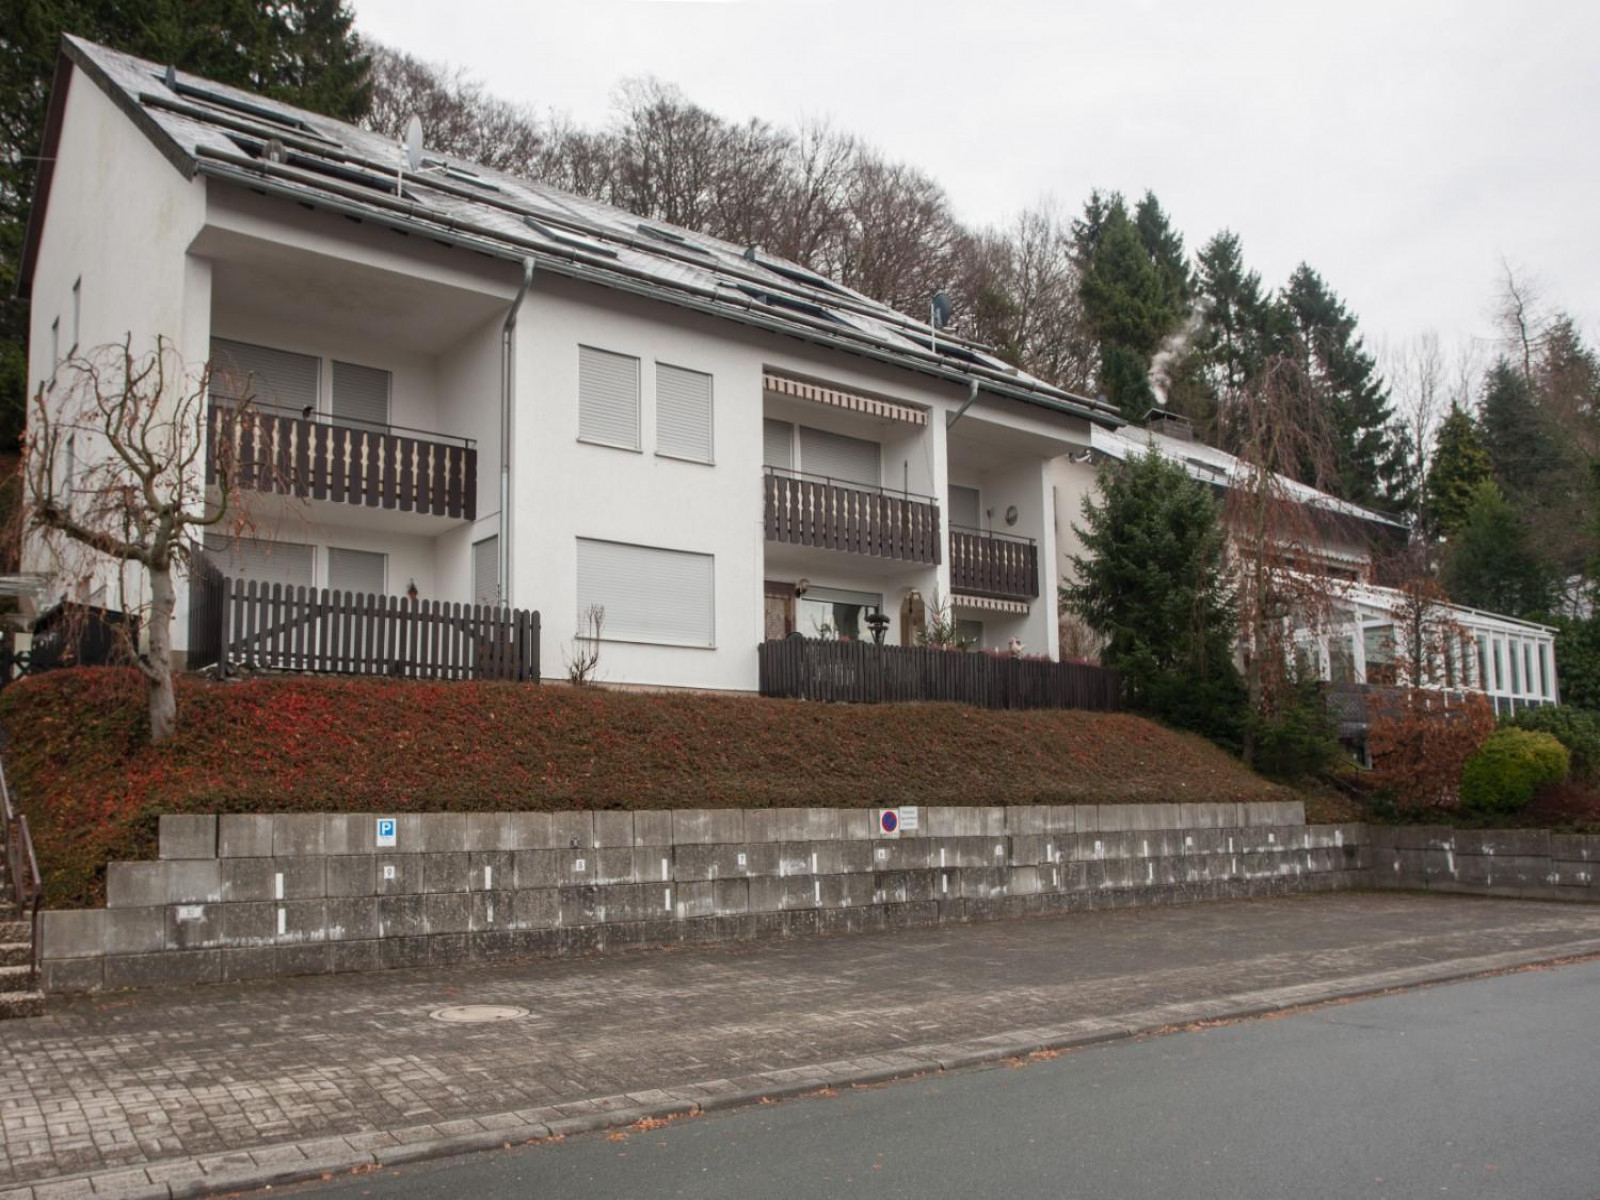 Mooi 4 persoons vakantieappartement nabij Winterberg - Duitsland - Europa - Niedersfeld